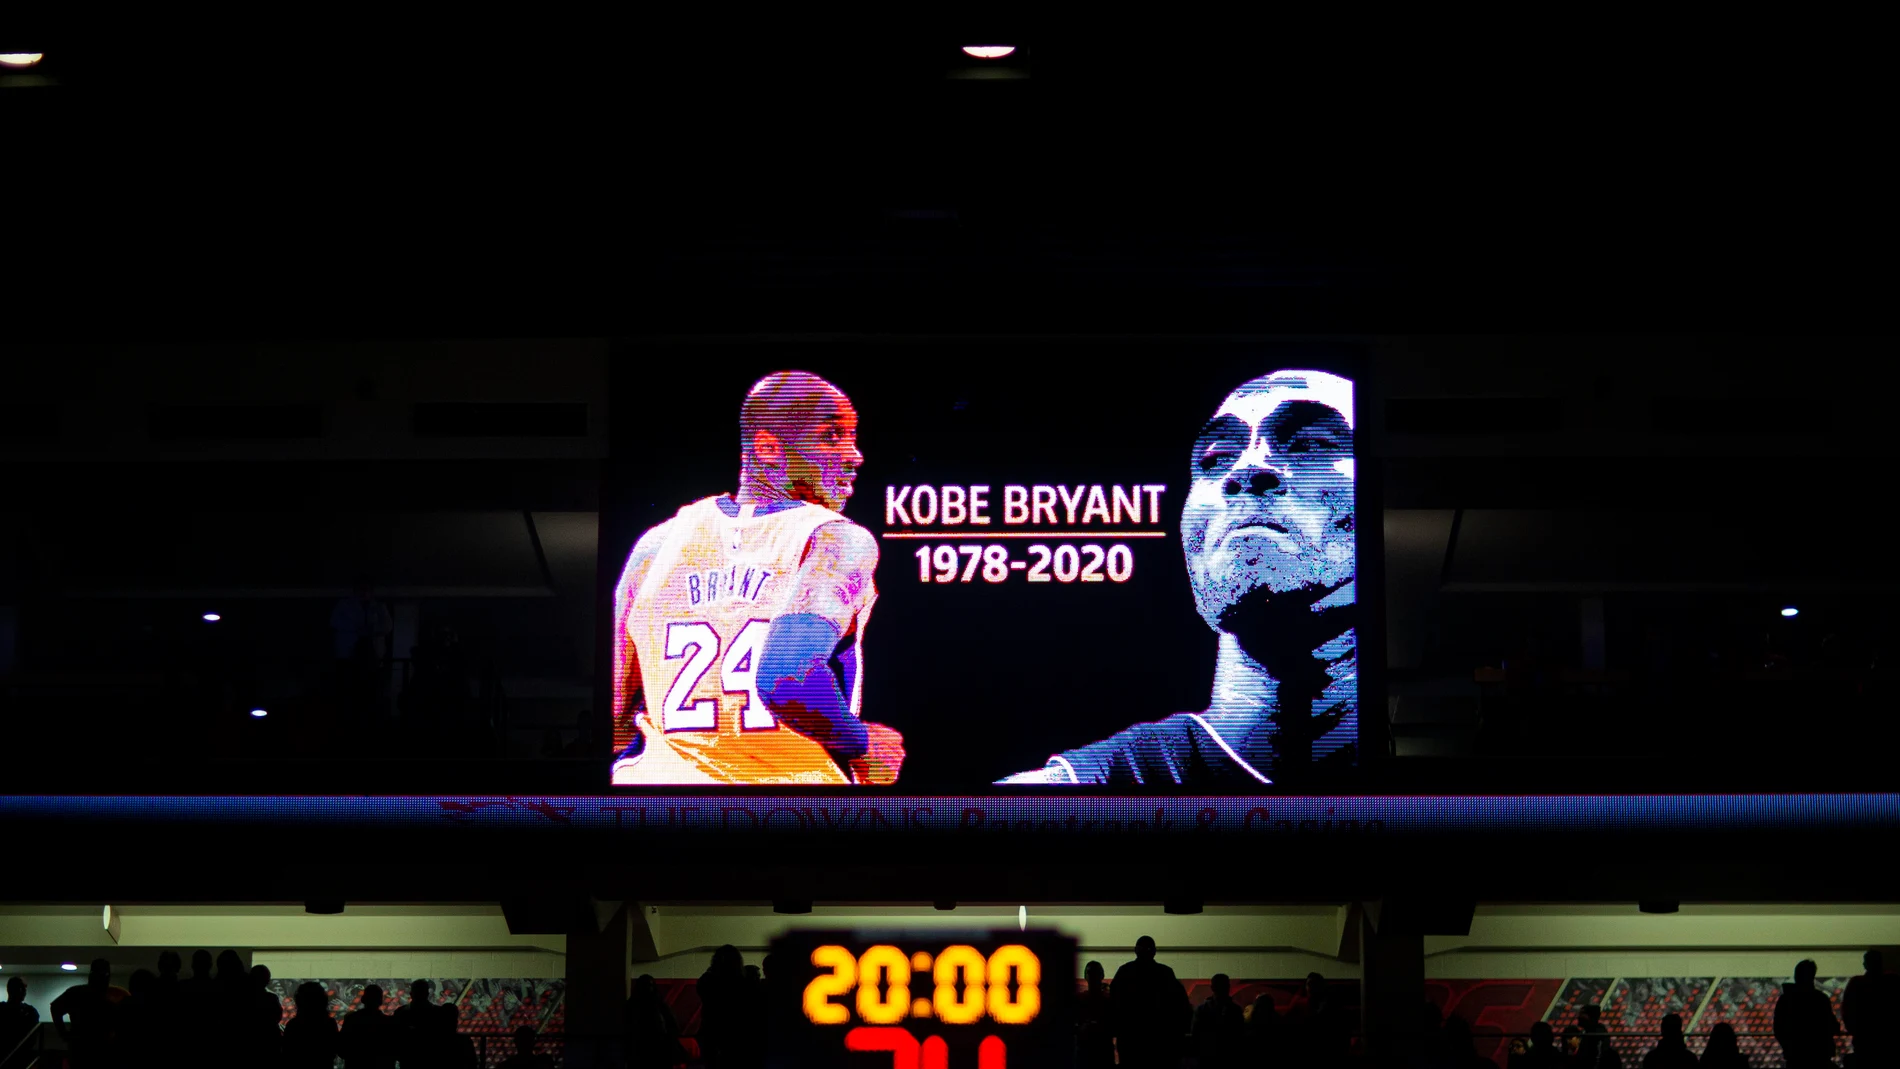 Uno de los múltiples homenajes en memoria de Kobe Bryant